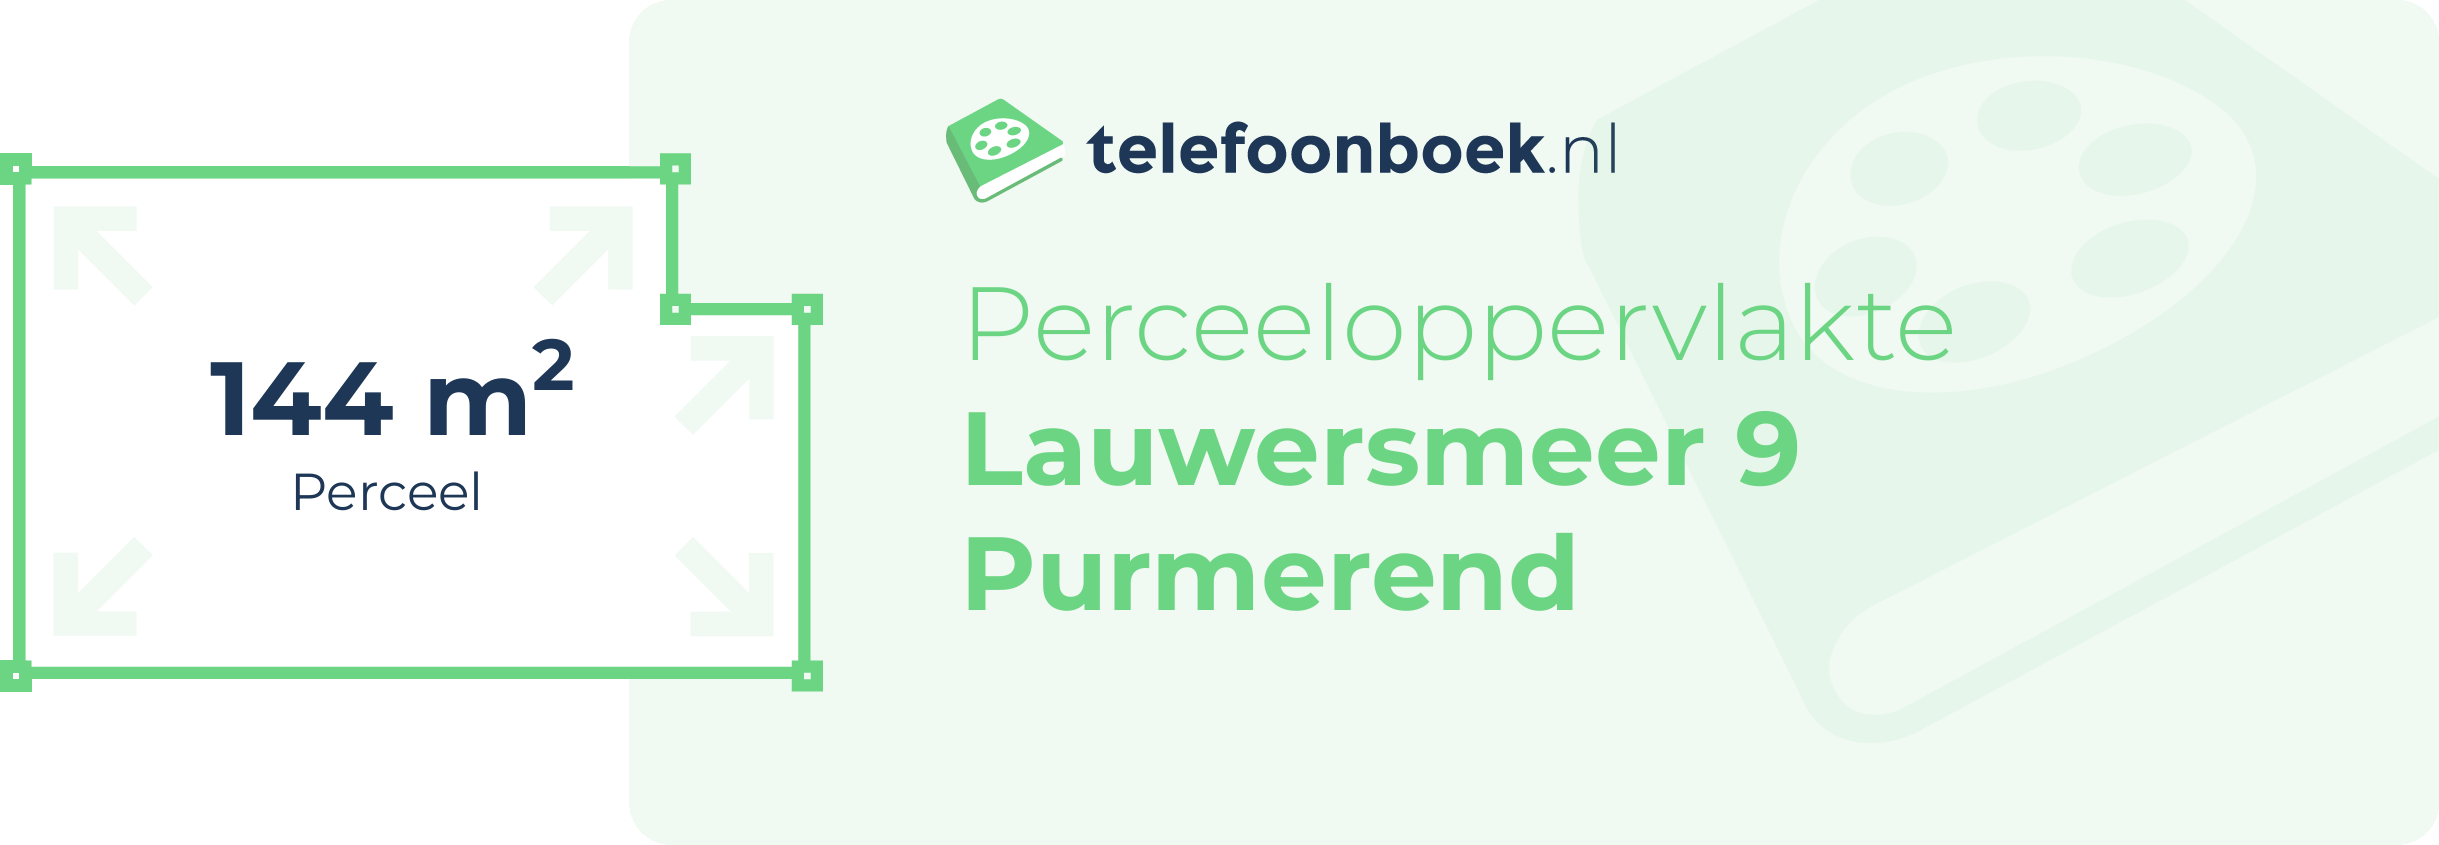 Perceeloppervlakte Lauwersmeer 9 Purmerend